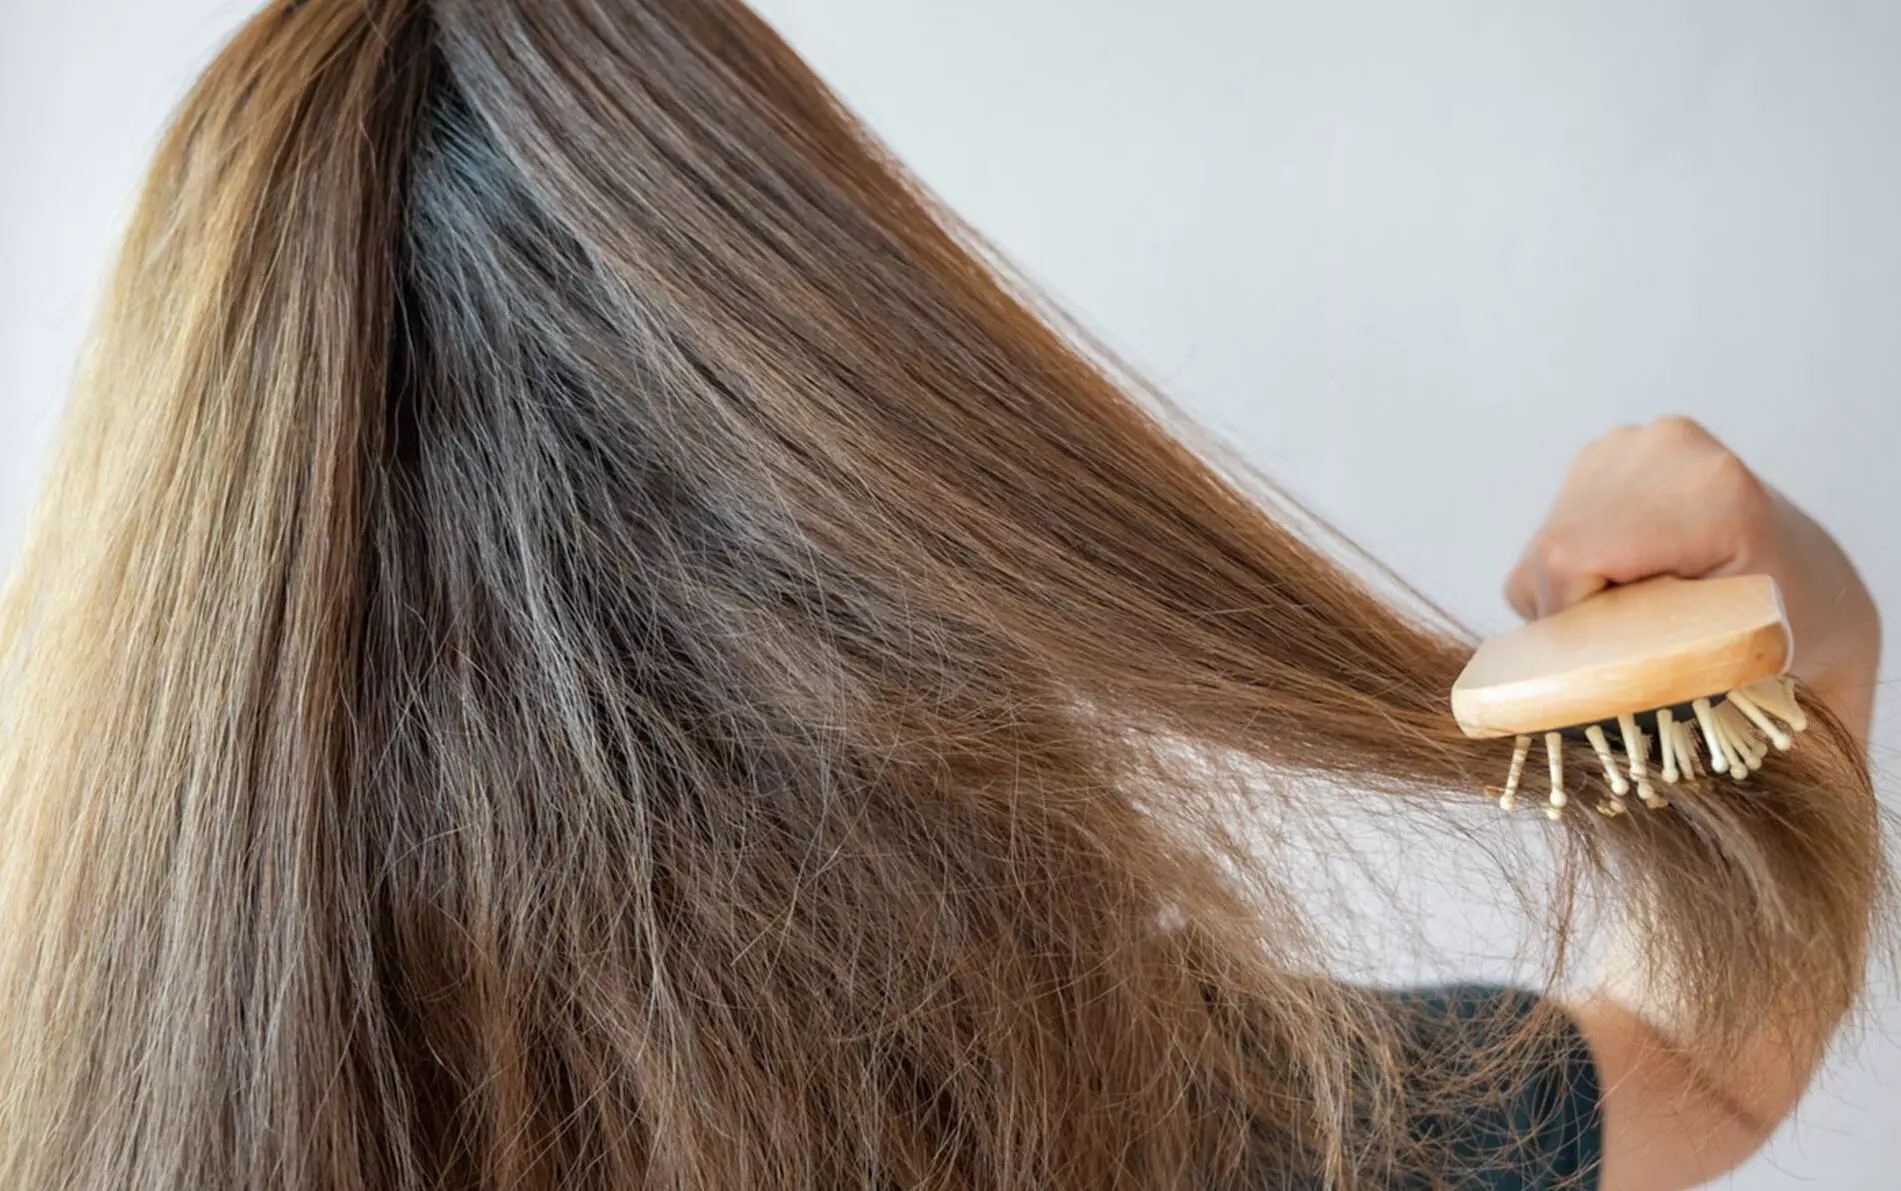 વાળની ફ્રઝીનેસને કારણે તમારો લુક બગાડી દીધો છો,તો વાળને મુલાયમ બનાવવા આ ટિપ્સ અપનાવો...